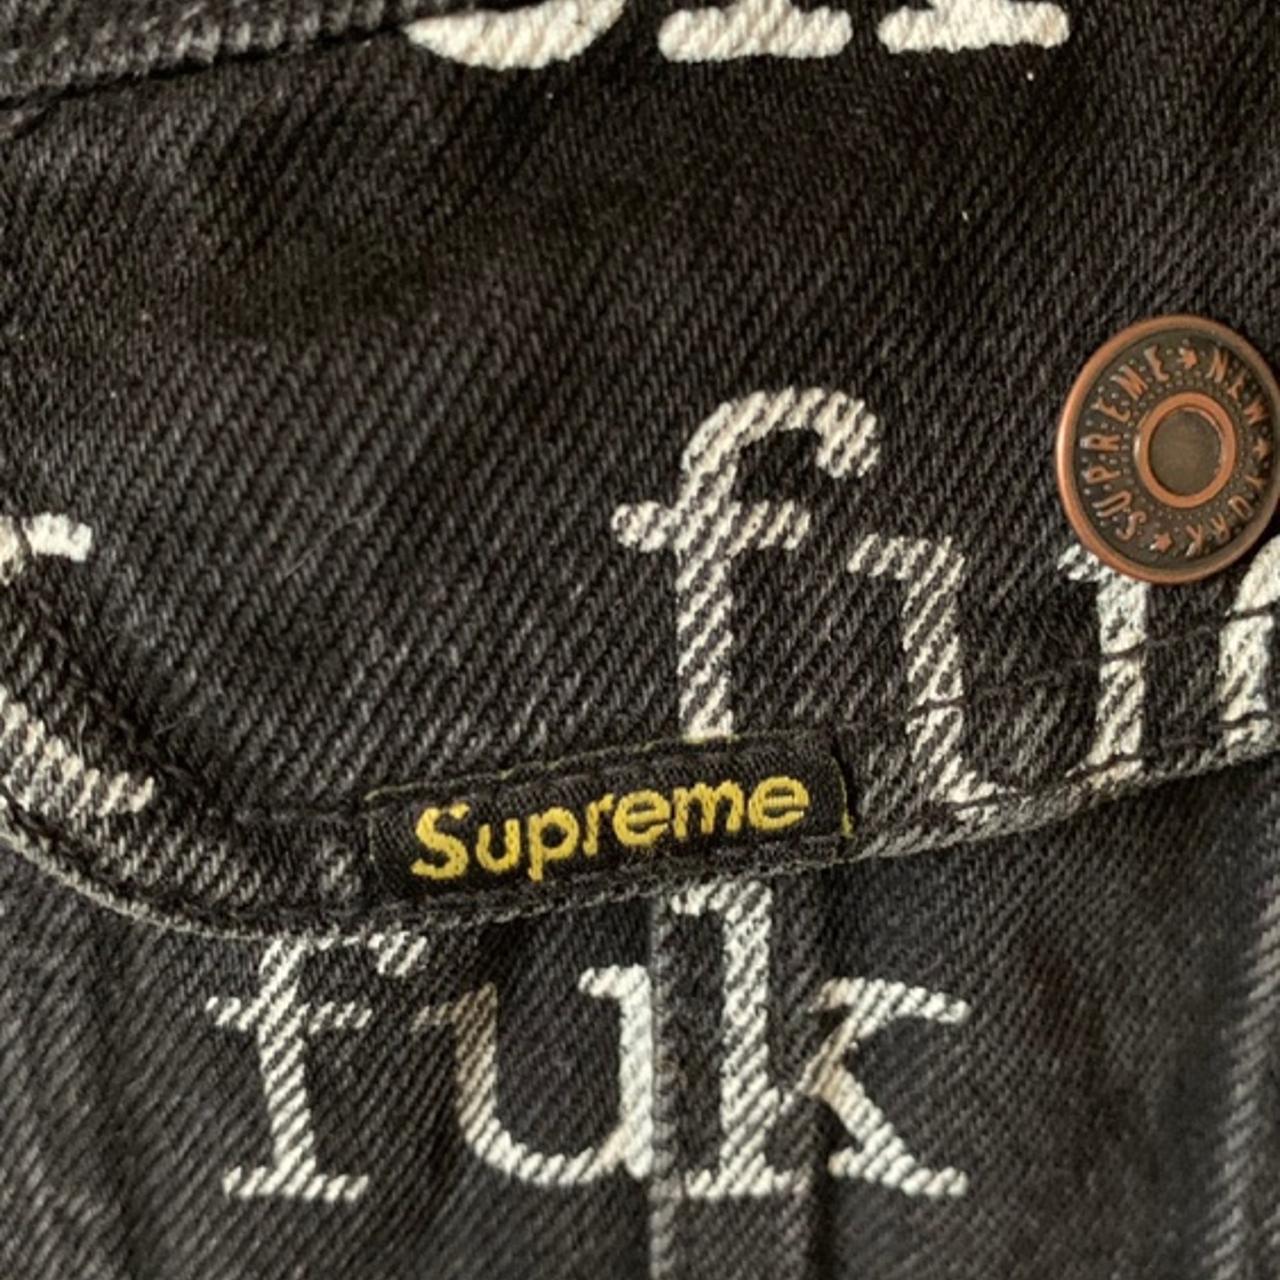 Supreme fuck denim jacket 9/10 - Depop